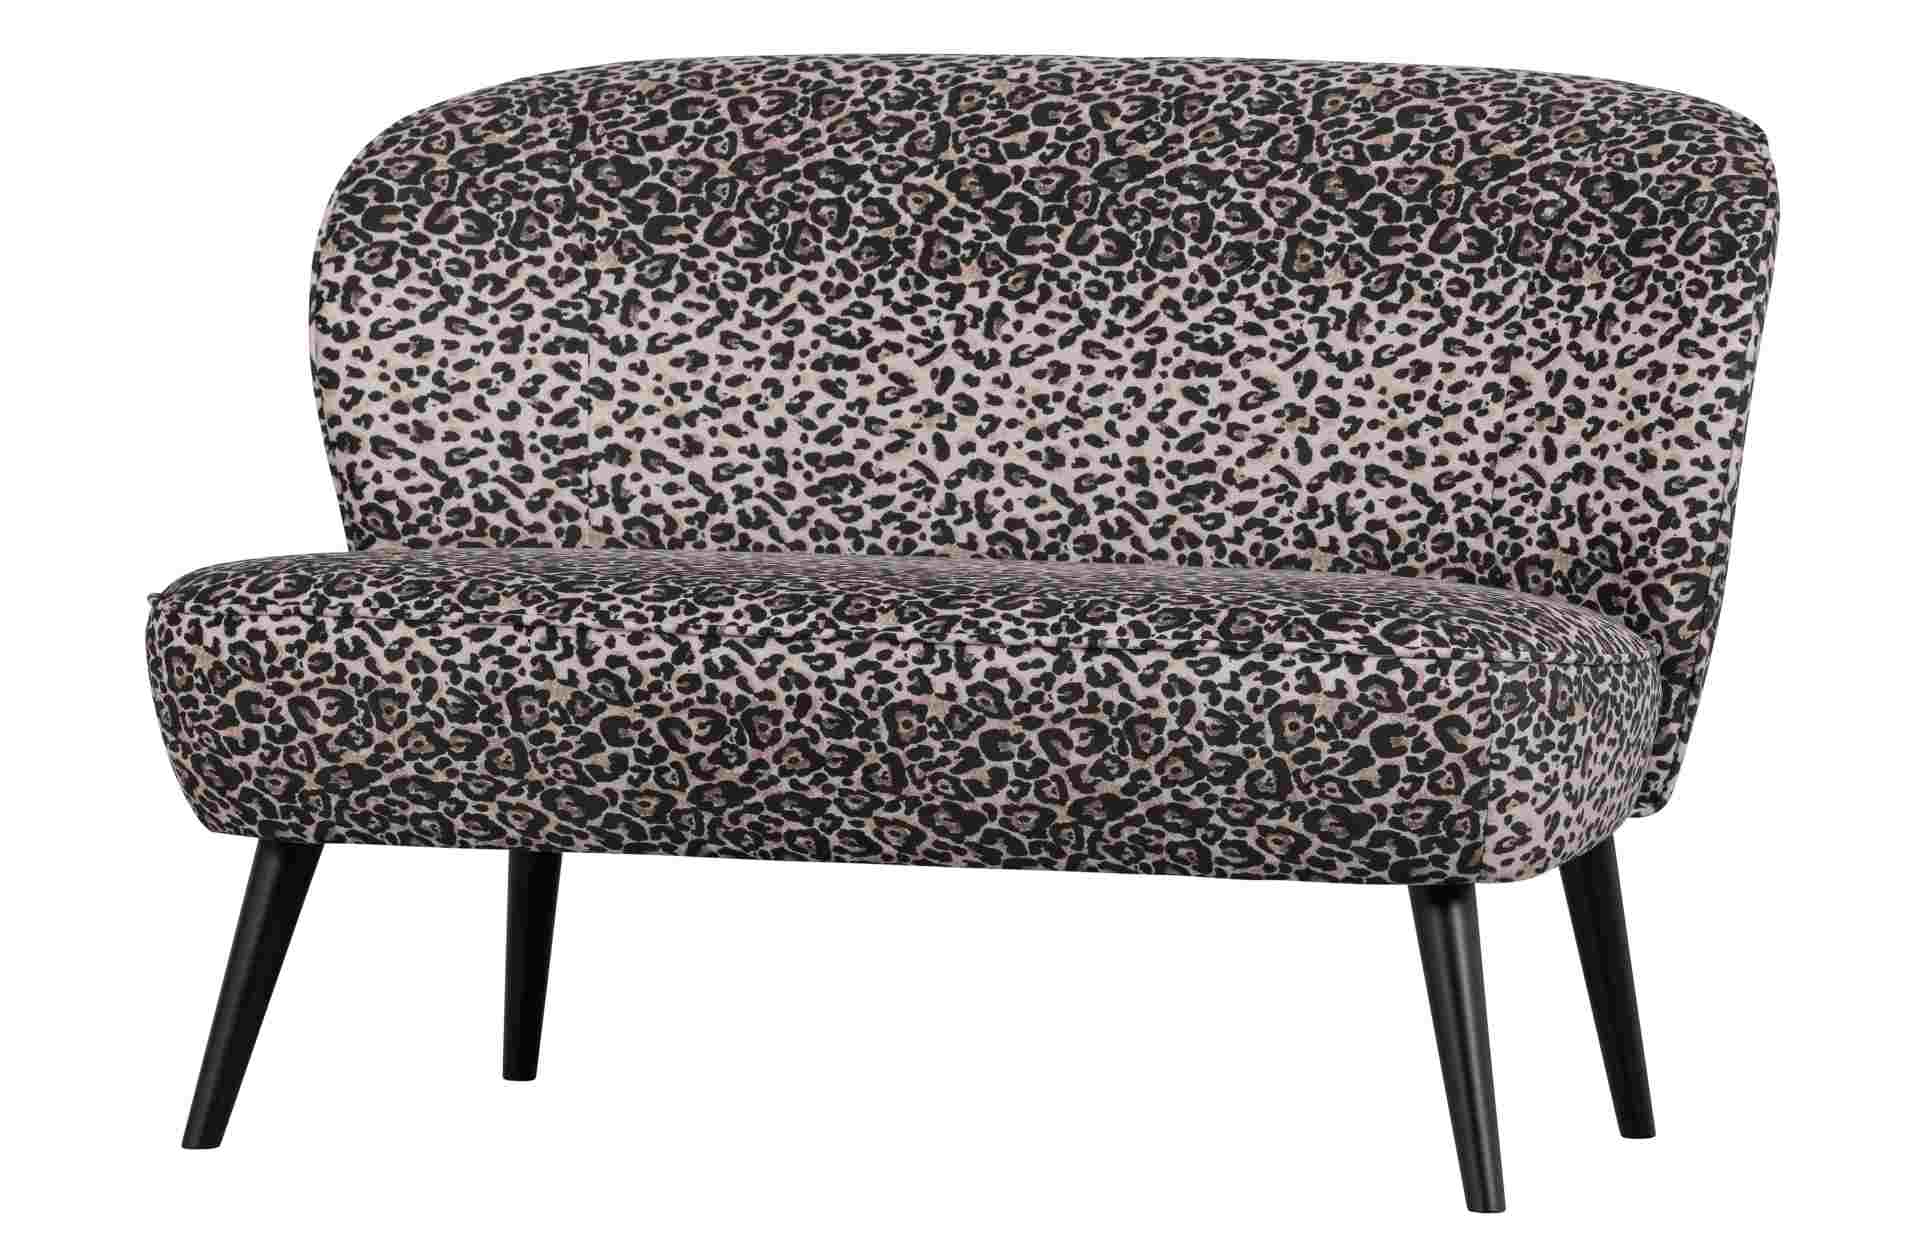 Das 2-Sitzer Sofa Megan überzeugt mit seinem klassischen Design. Gefertigt wurde es aus Kunststofffasern, welche einen einen Panther Look besitzen. Das Gestell ist aus Metall und hat eine schwarze Farbe. Die Sitzhöhe beträgt 45 cm.